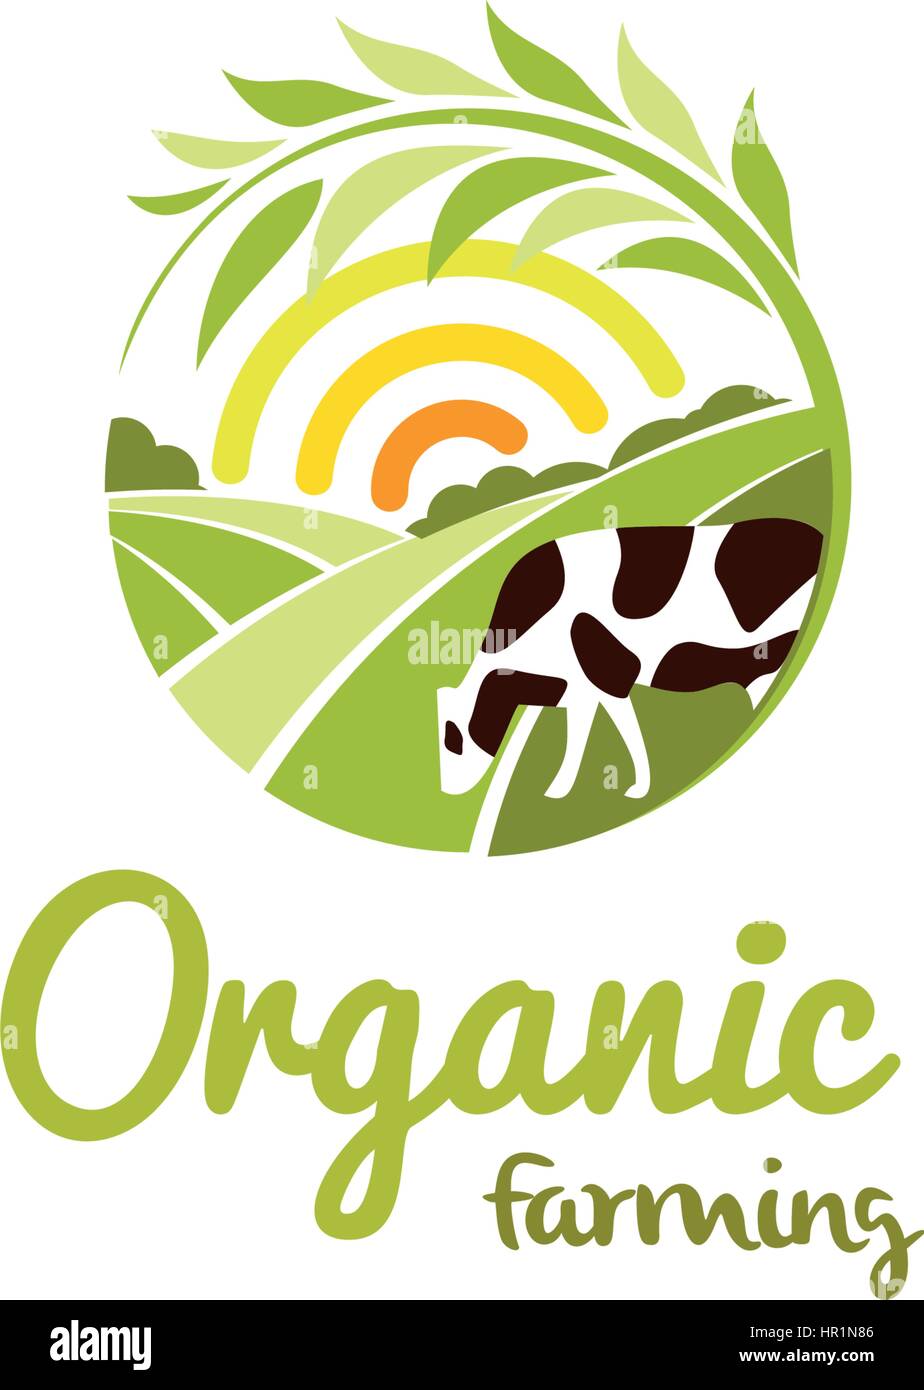 Isolierte abstrakt Runde Form ländlichen Landschaft mit Sonne, grüne Wiese und Kuh-Logo, der ökologische Landbau Logo-Vektor-Illustration. Stock Vektor